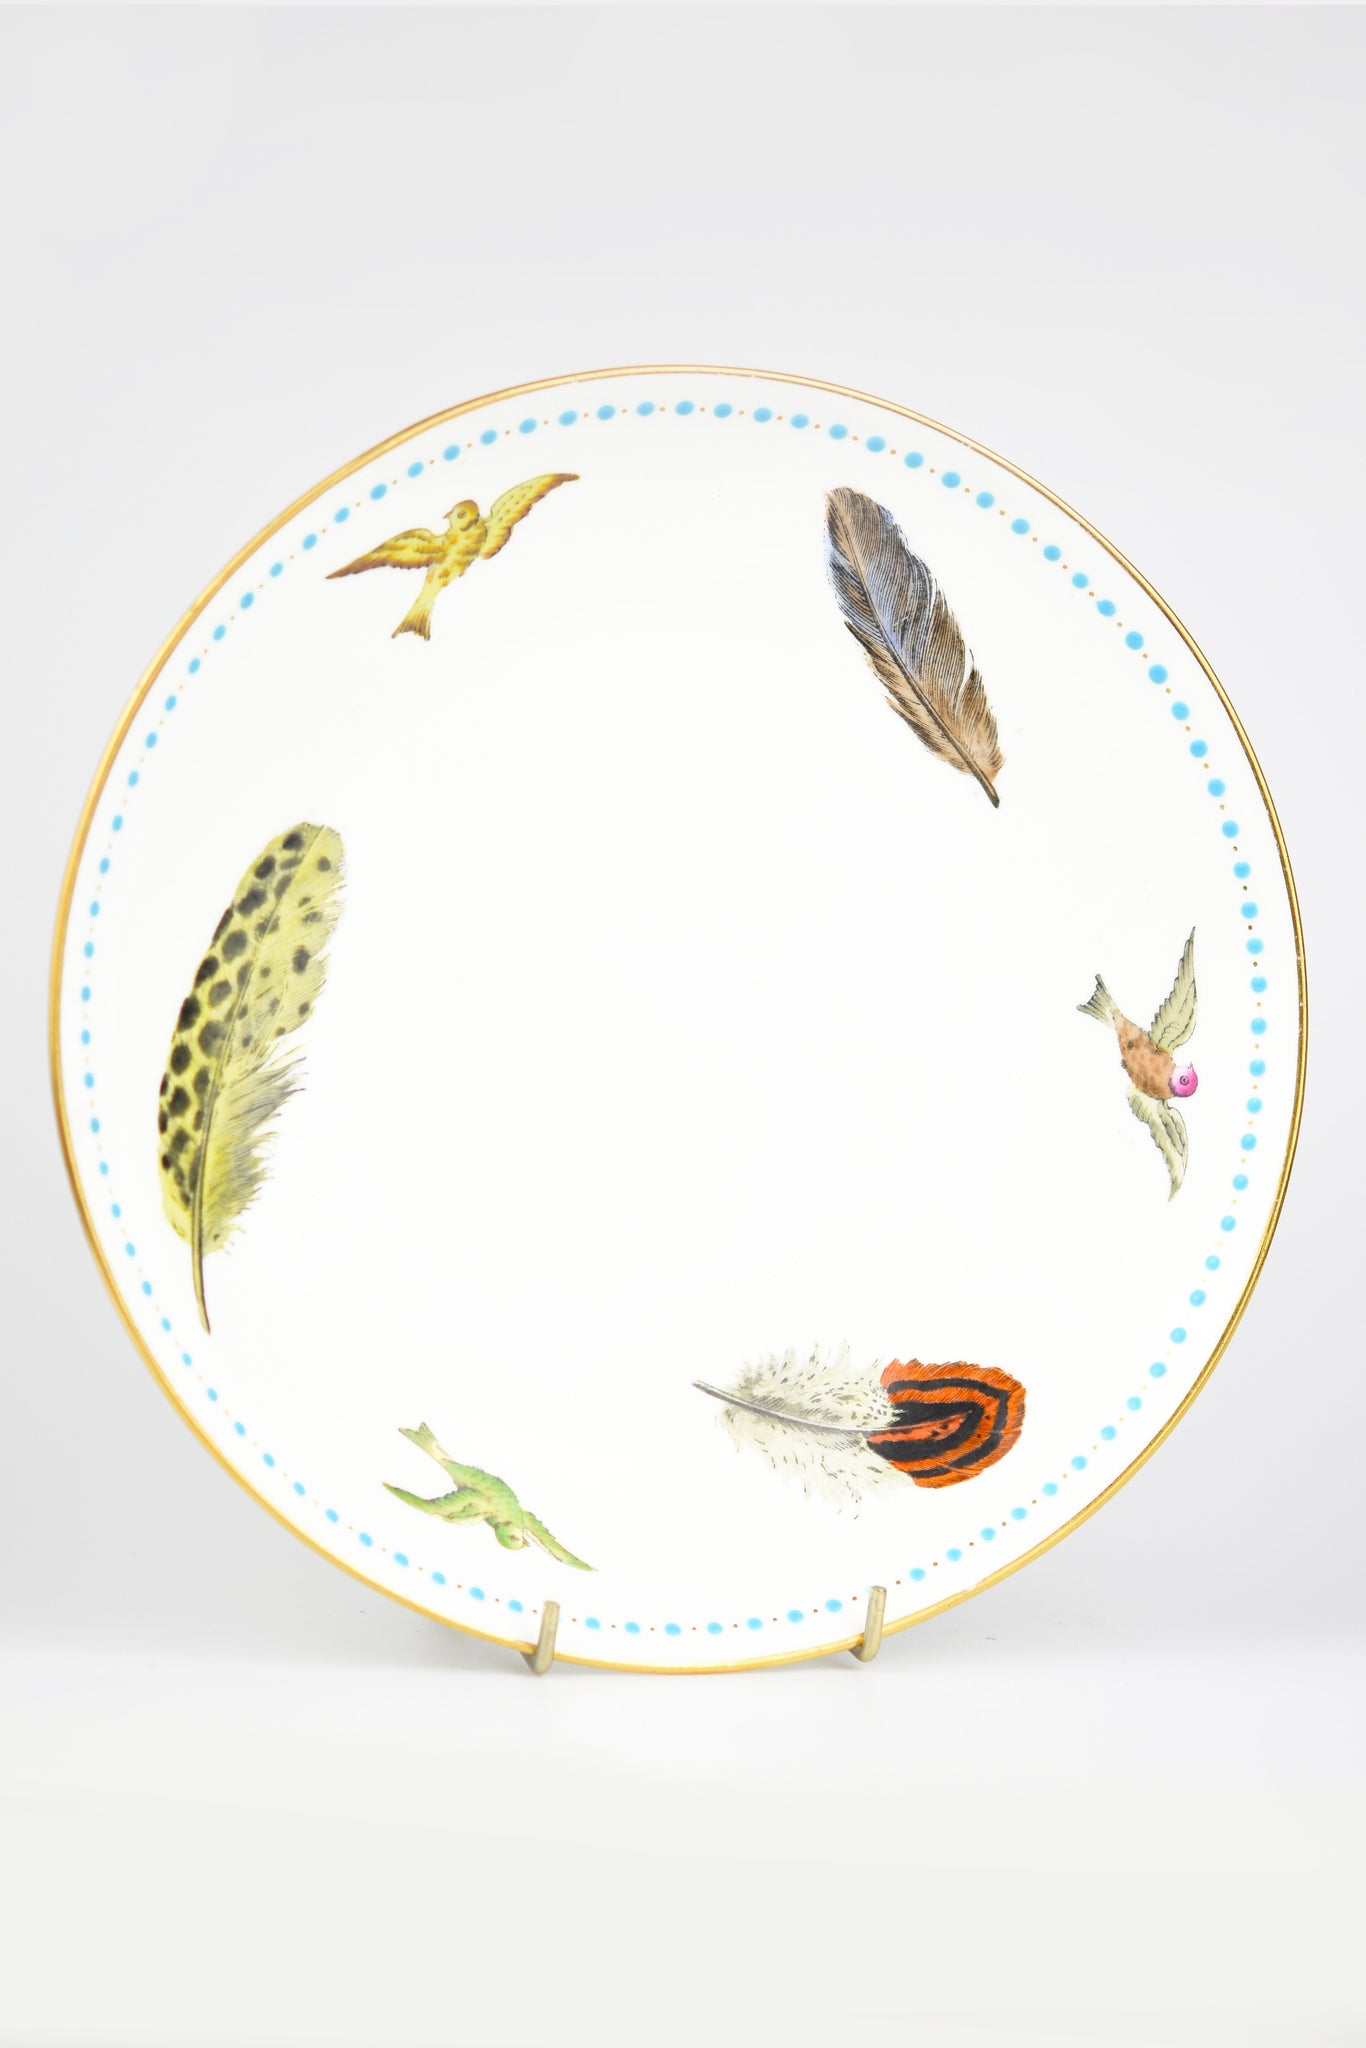 Minton Porcelain Feathers & Birds Dessert Plate c.1875